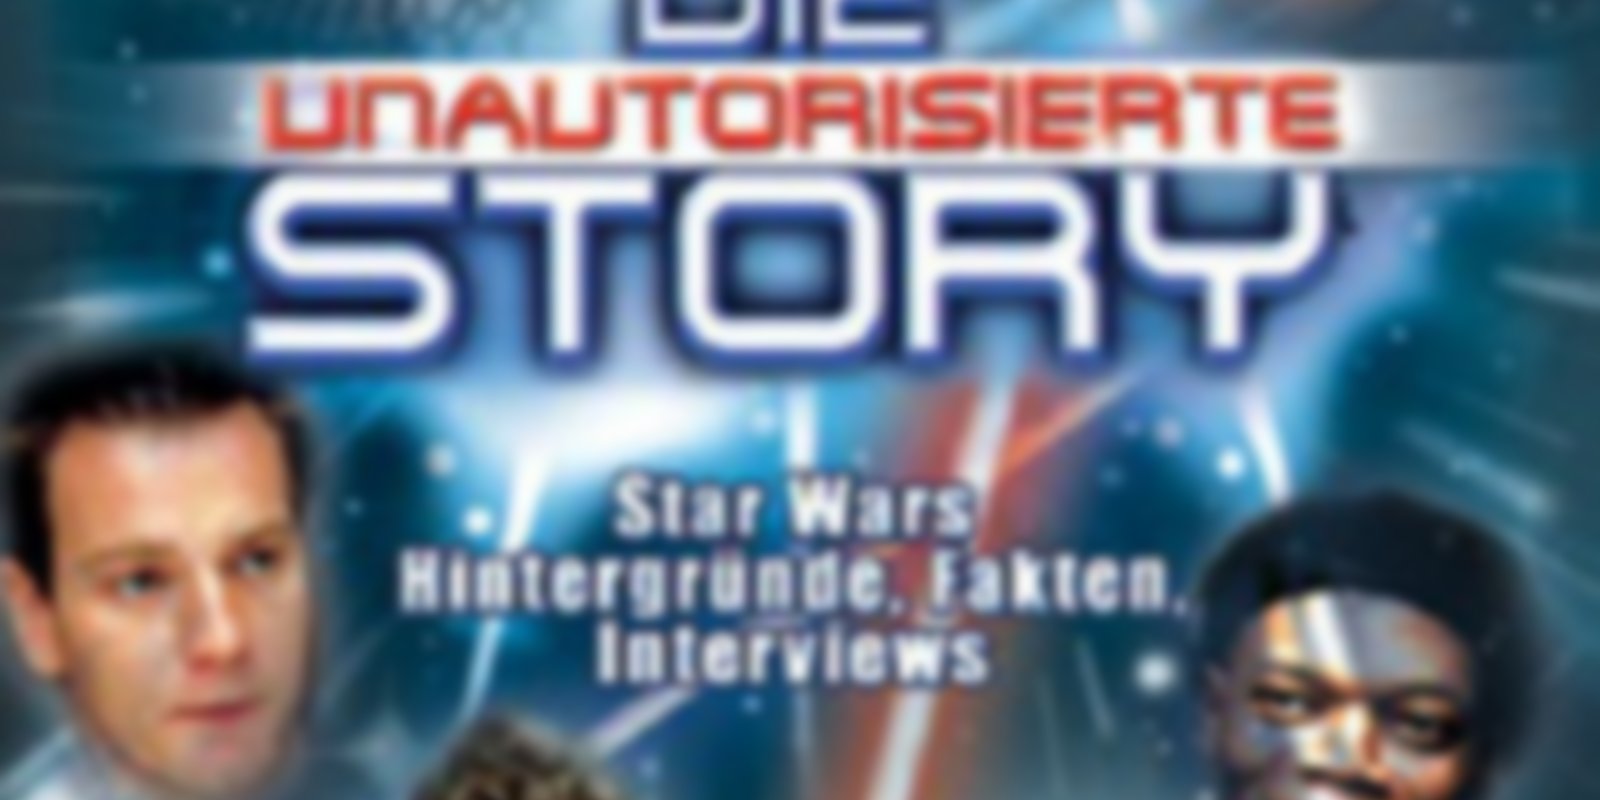 Star Wars - Die unautorisierte Story